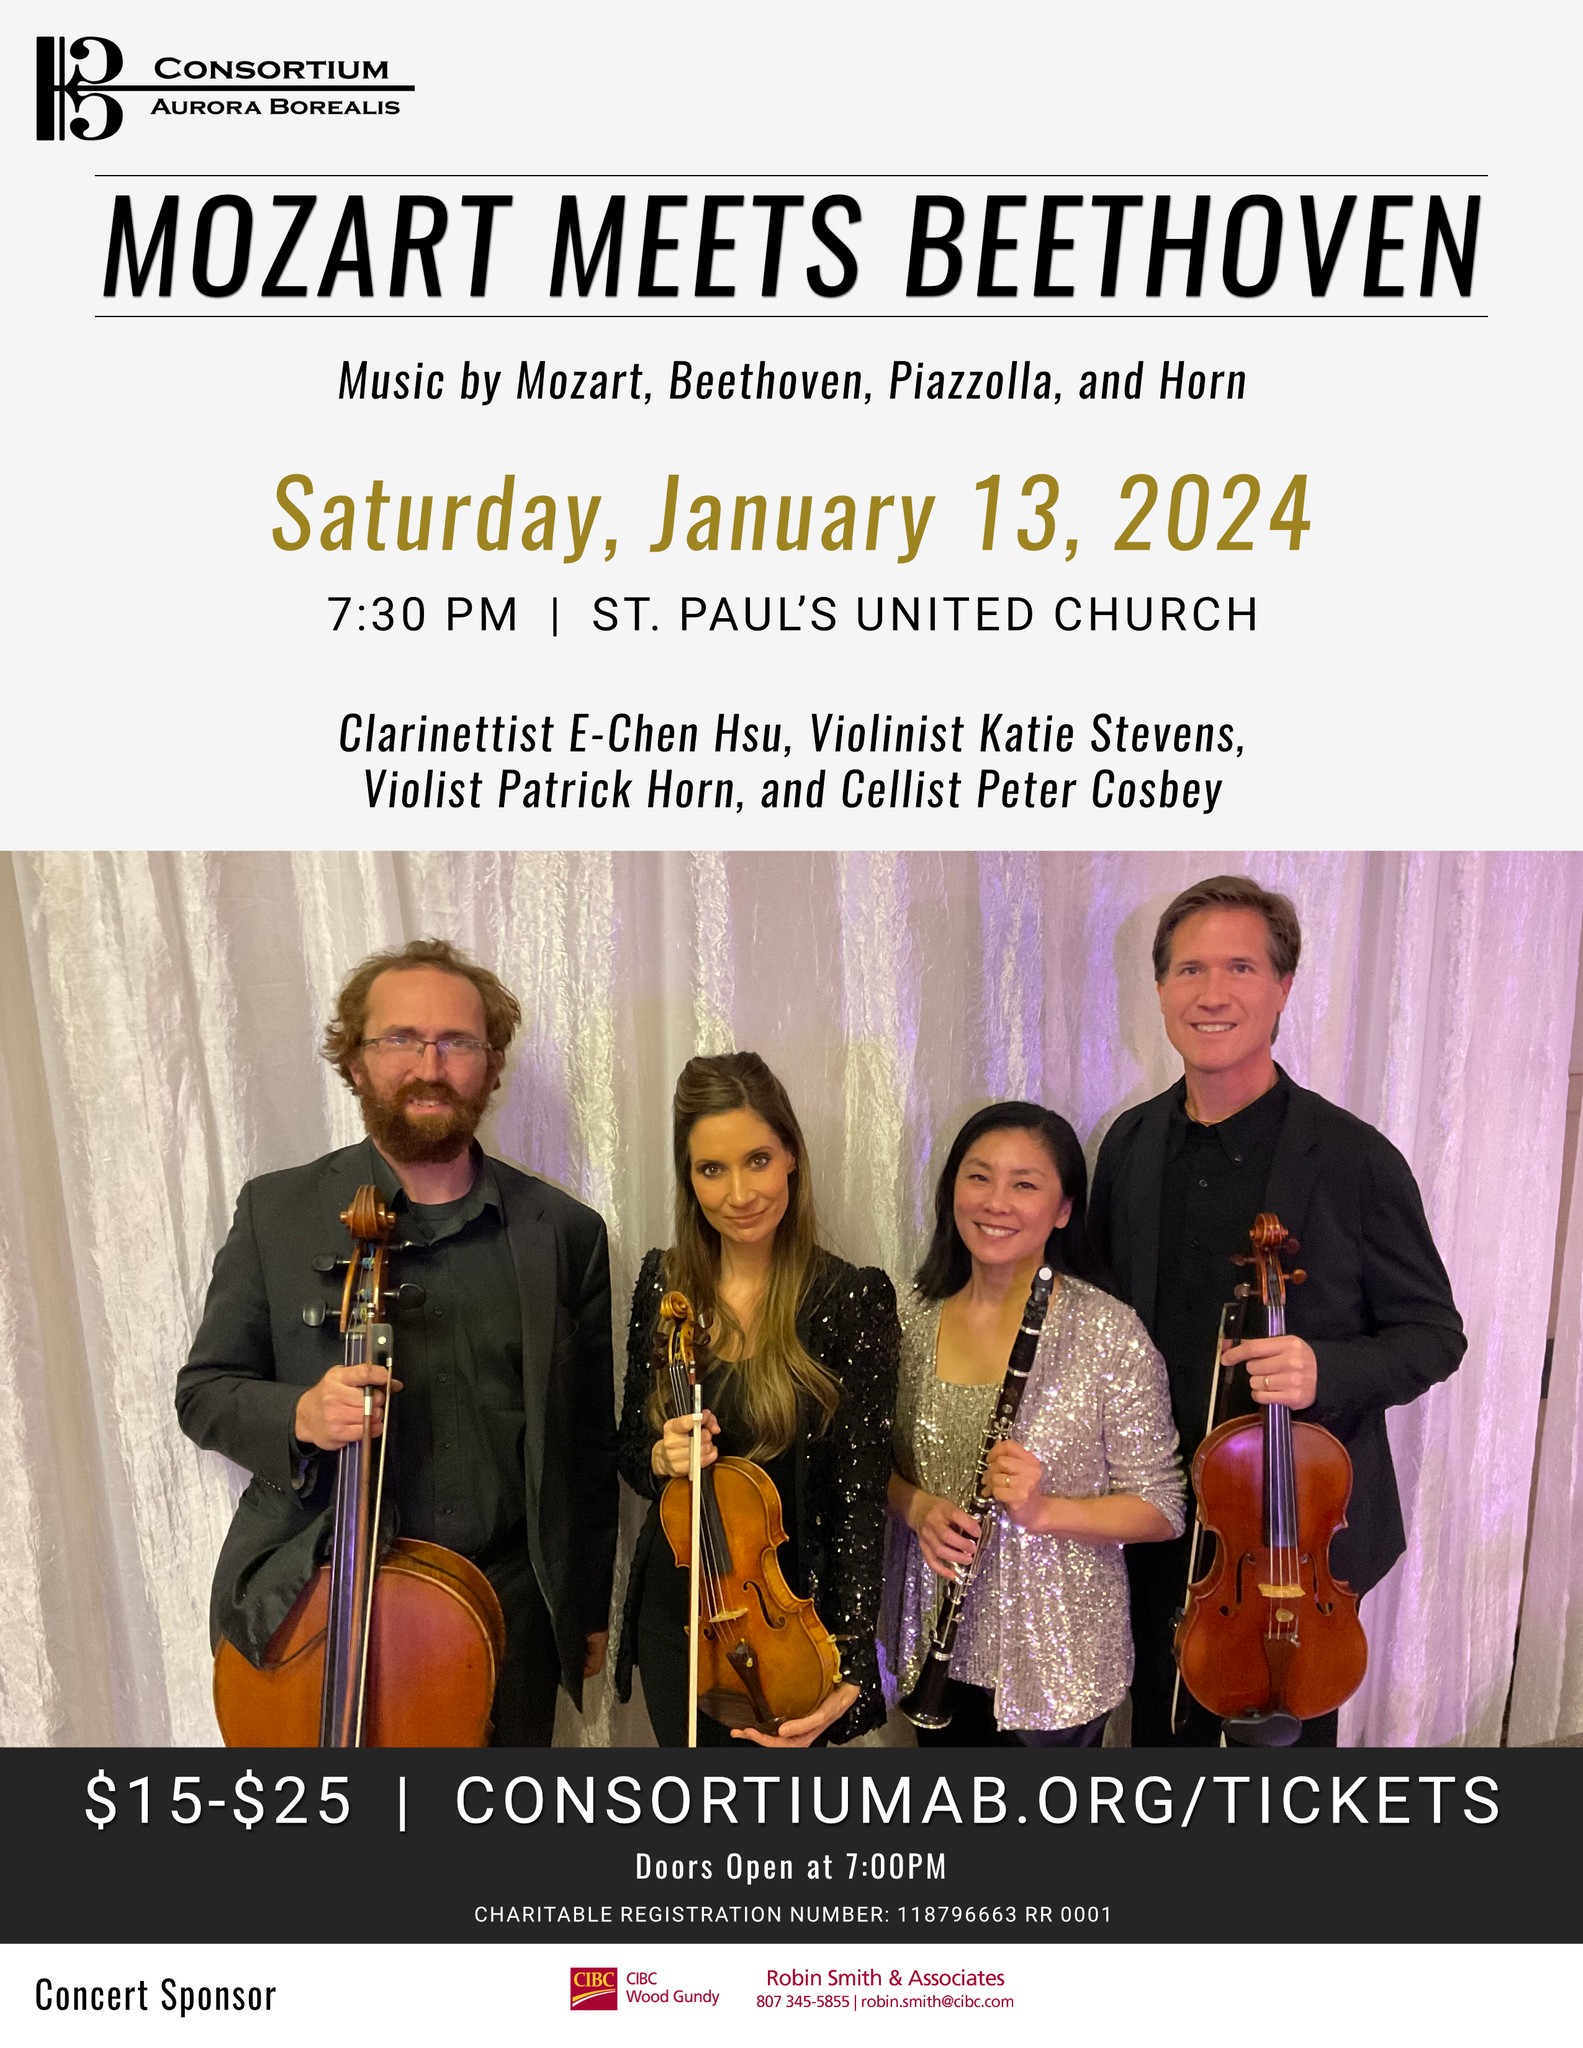 Consortium Aurora Borealis: Mozart Meets Beethoven